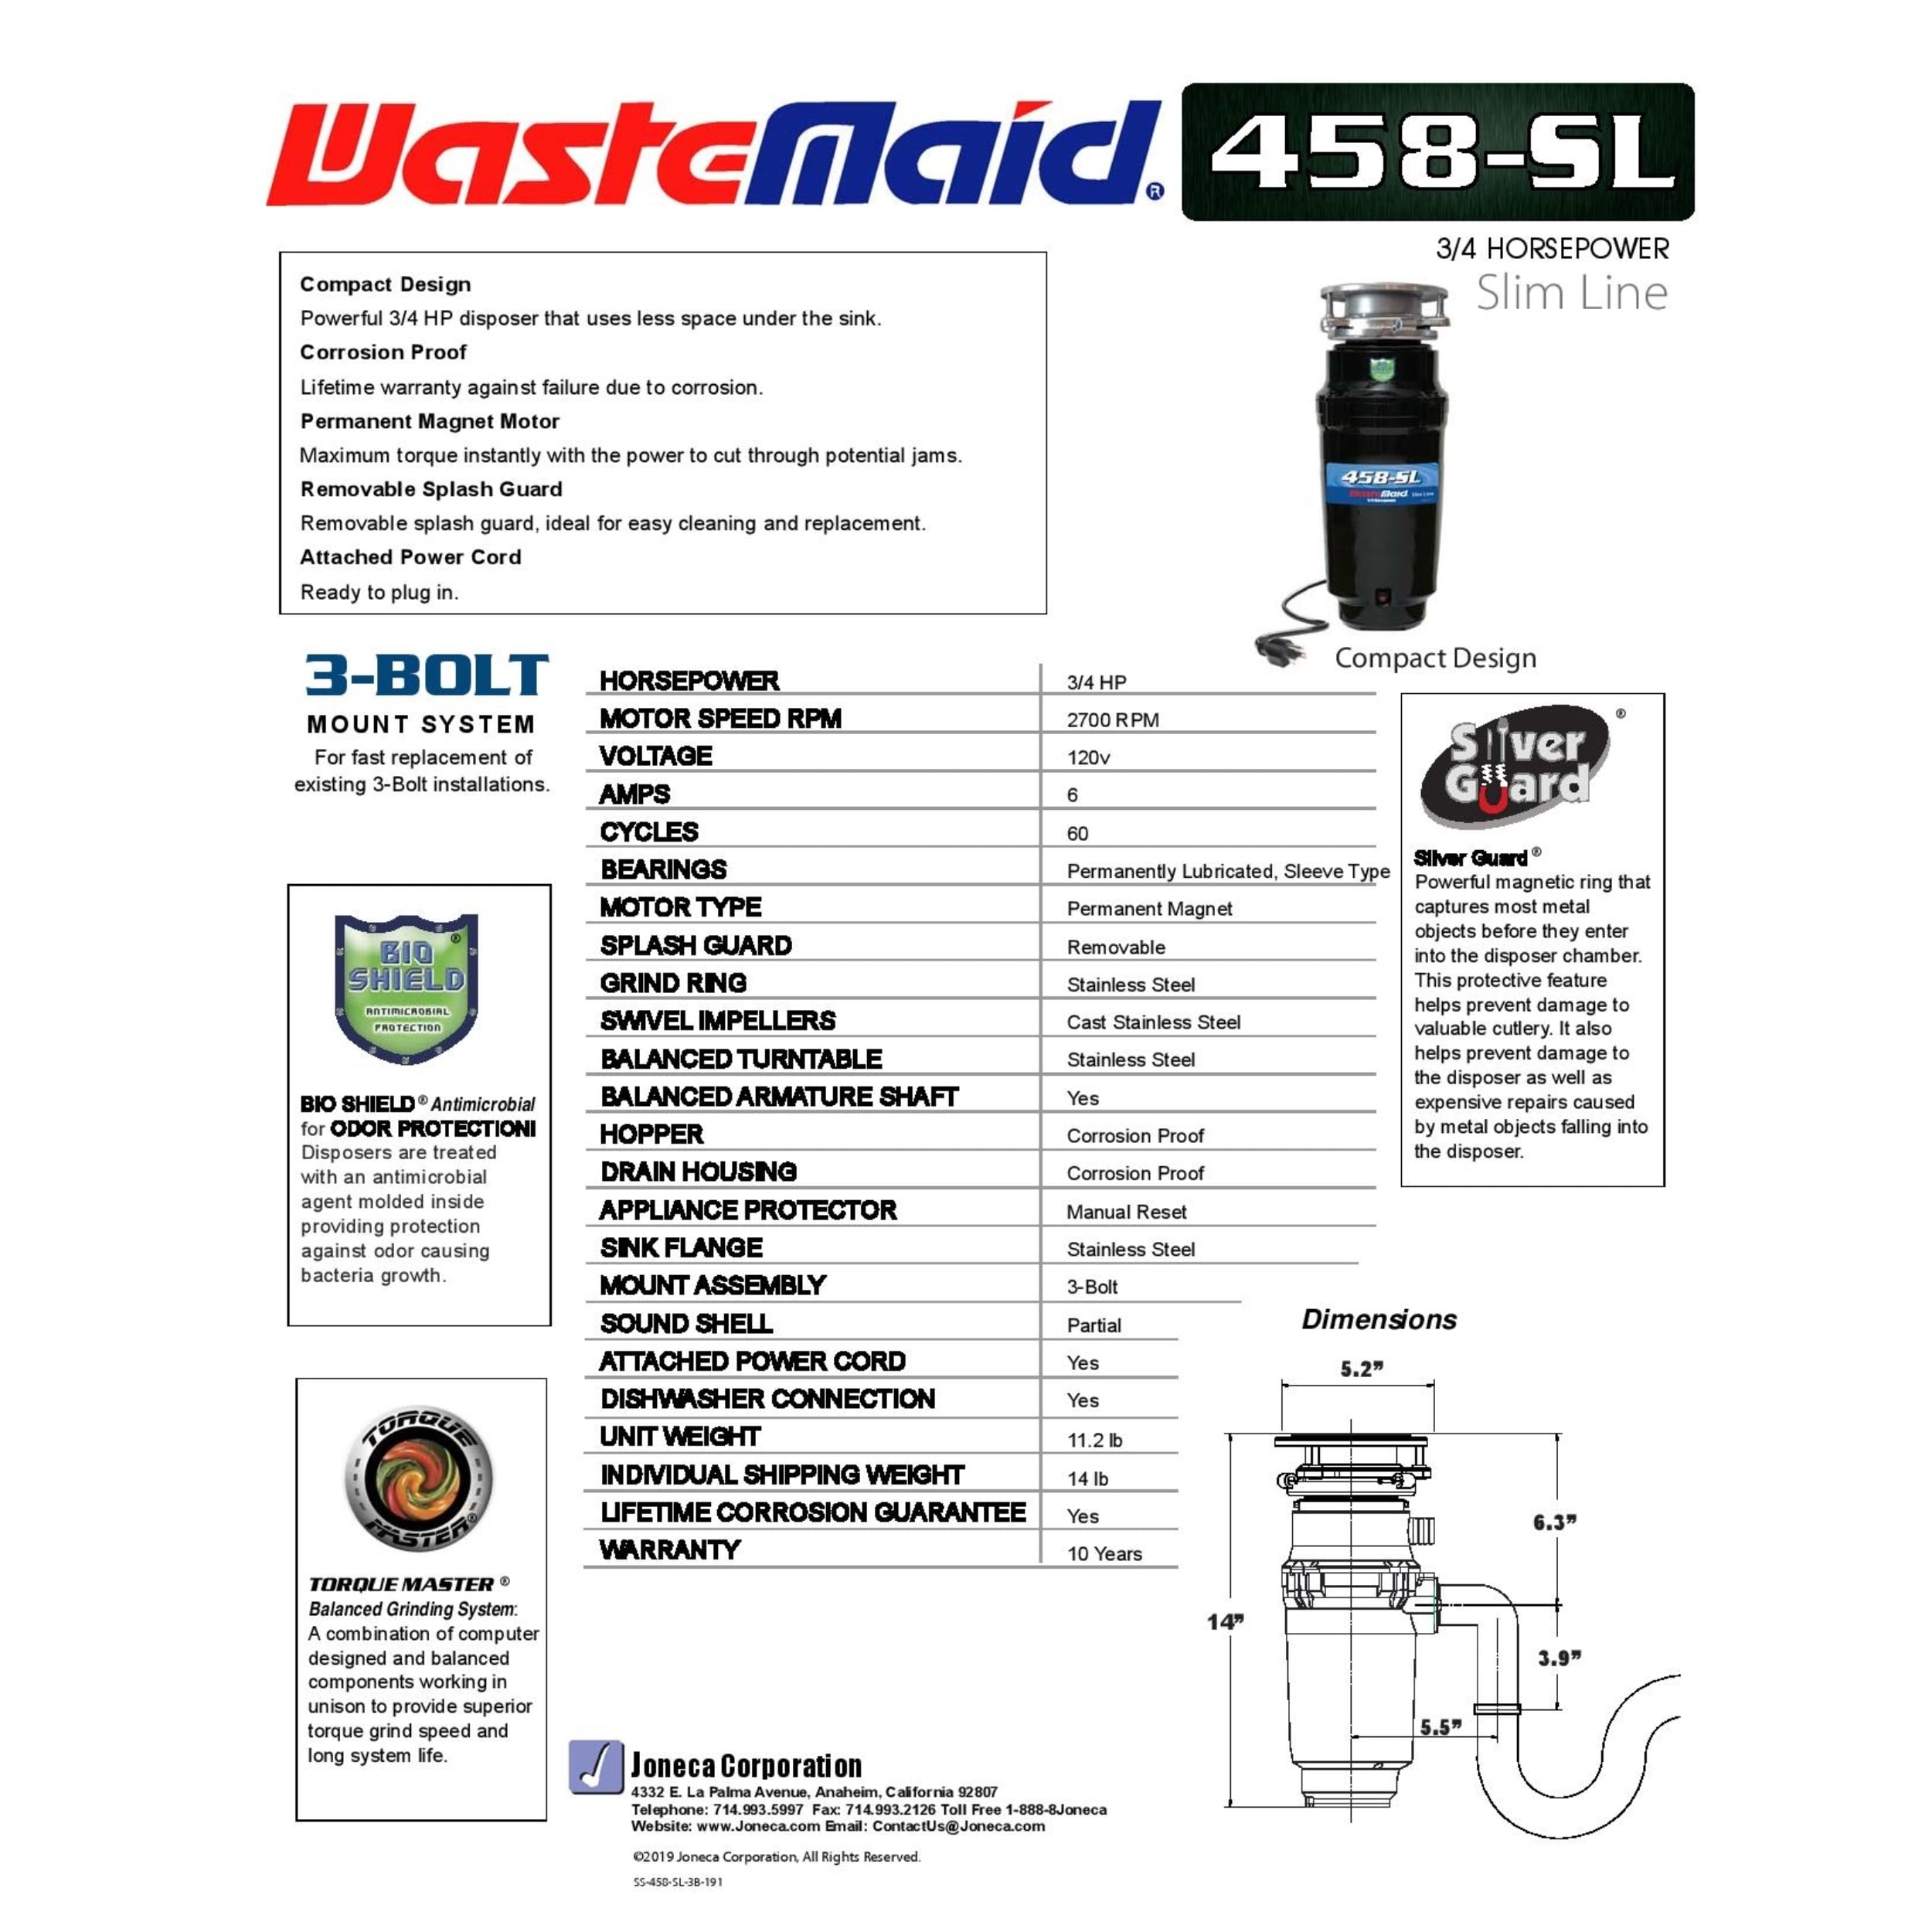 Waste Maid 10-US-WM-458-SL-3B Garbage Disposal Anti-Jam Stainless Steel Food Waste Grinding System, Odor Protection, HP Slim Line, Black - 4